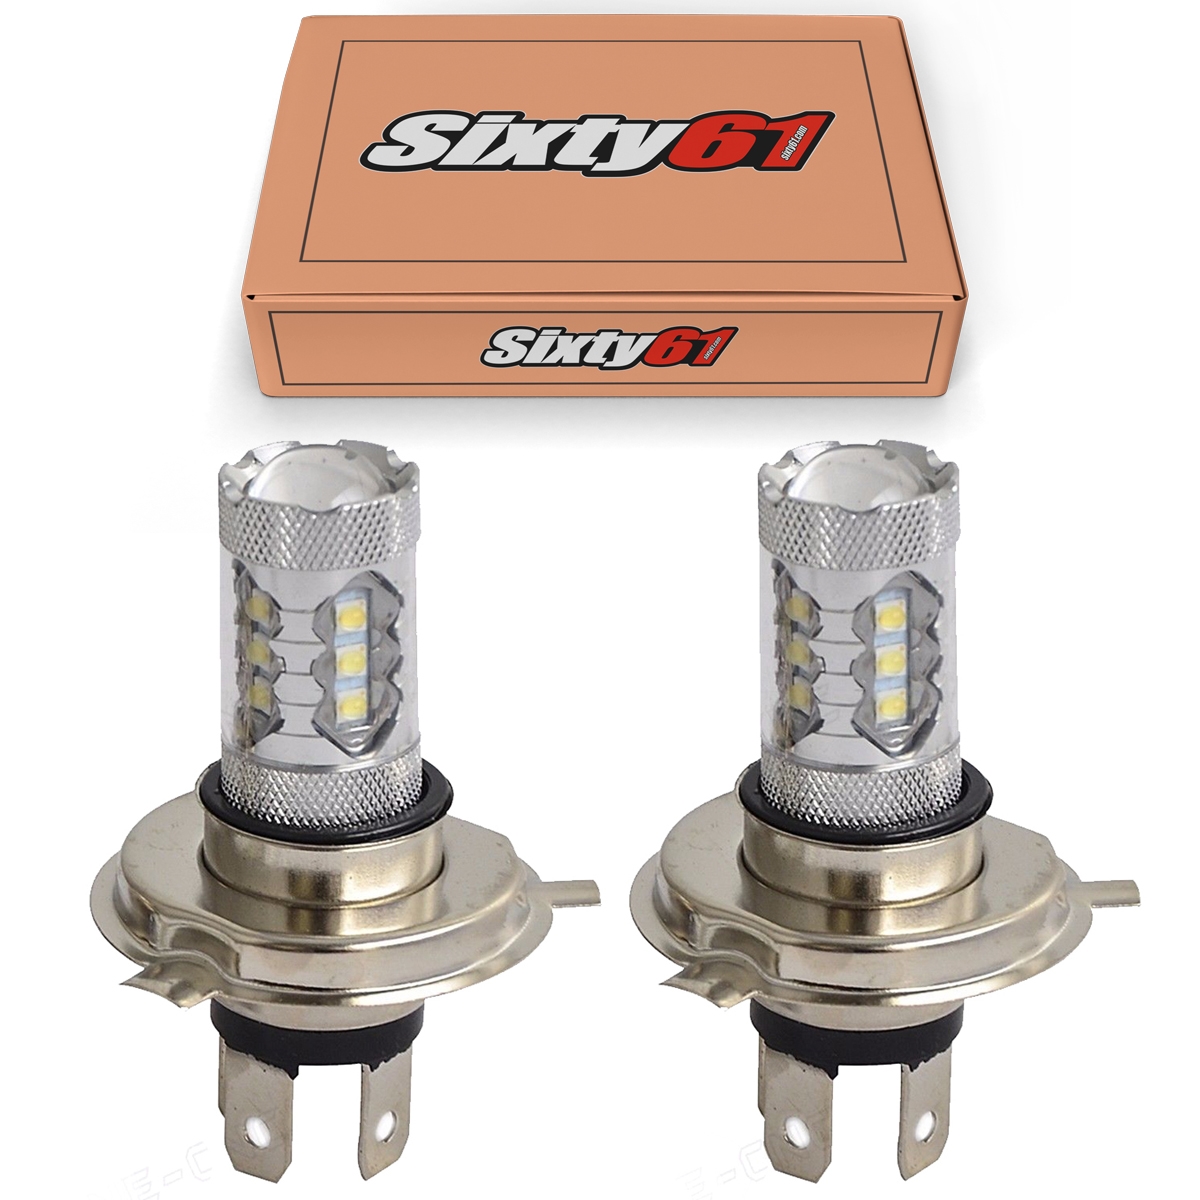 Sixty61 LED Headlight Bulbs for Can-Am Outlander 400 500 650 800 800R 2007-2011